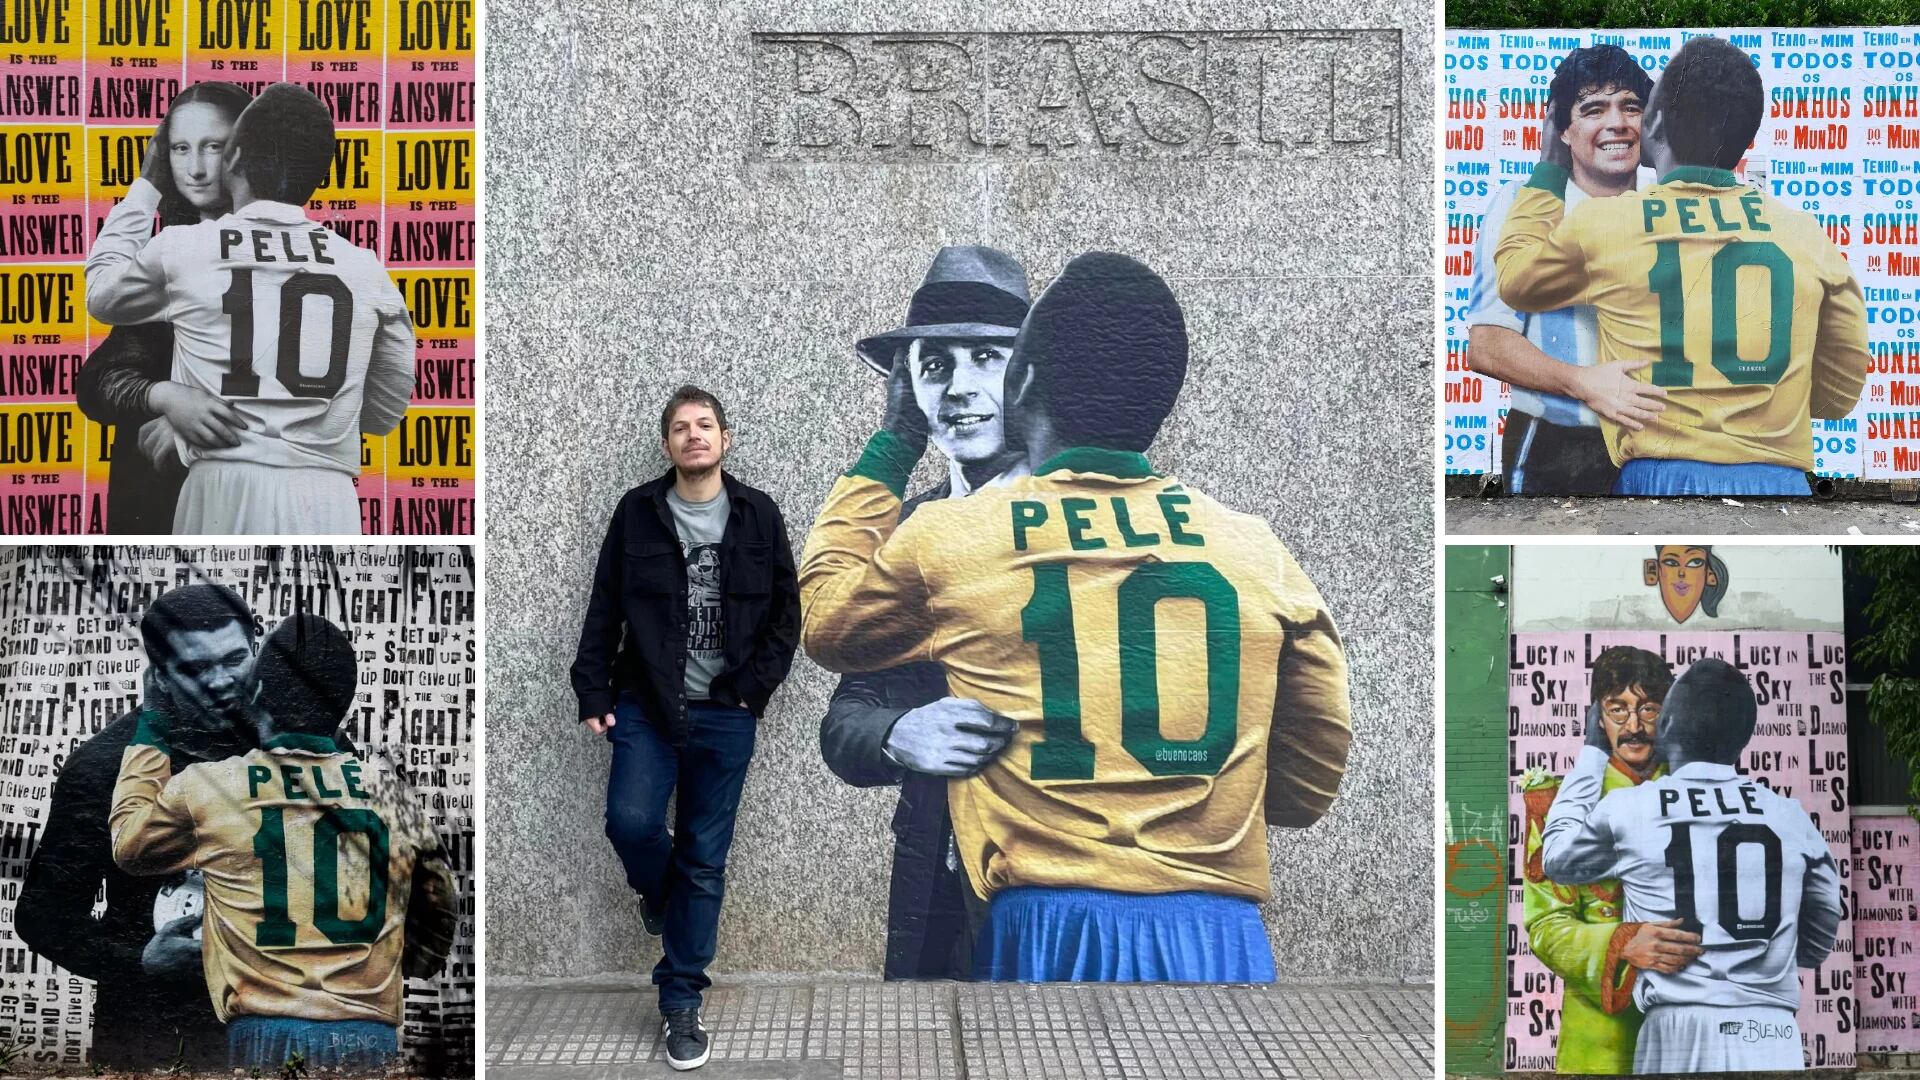 Pelé y sus besos recorren América latina, una forma de “dar nuevos aires” en tiempos difíciles